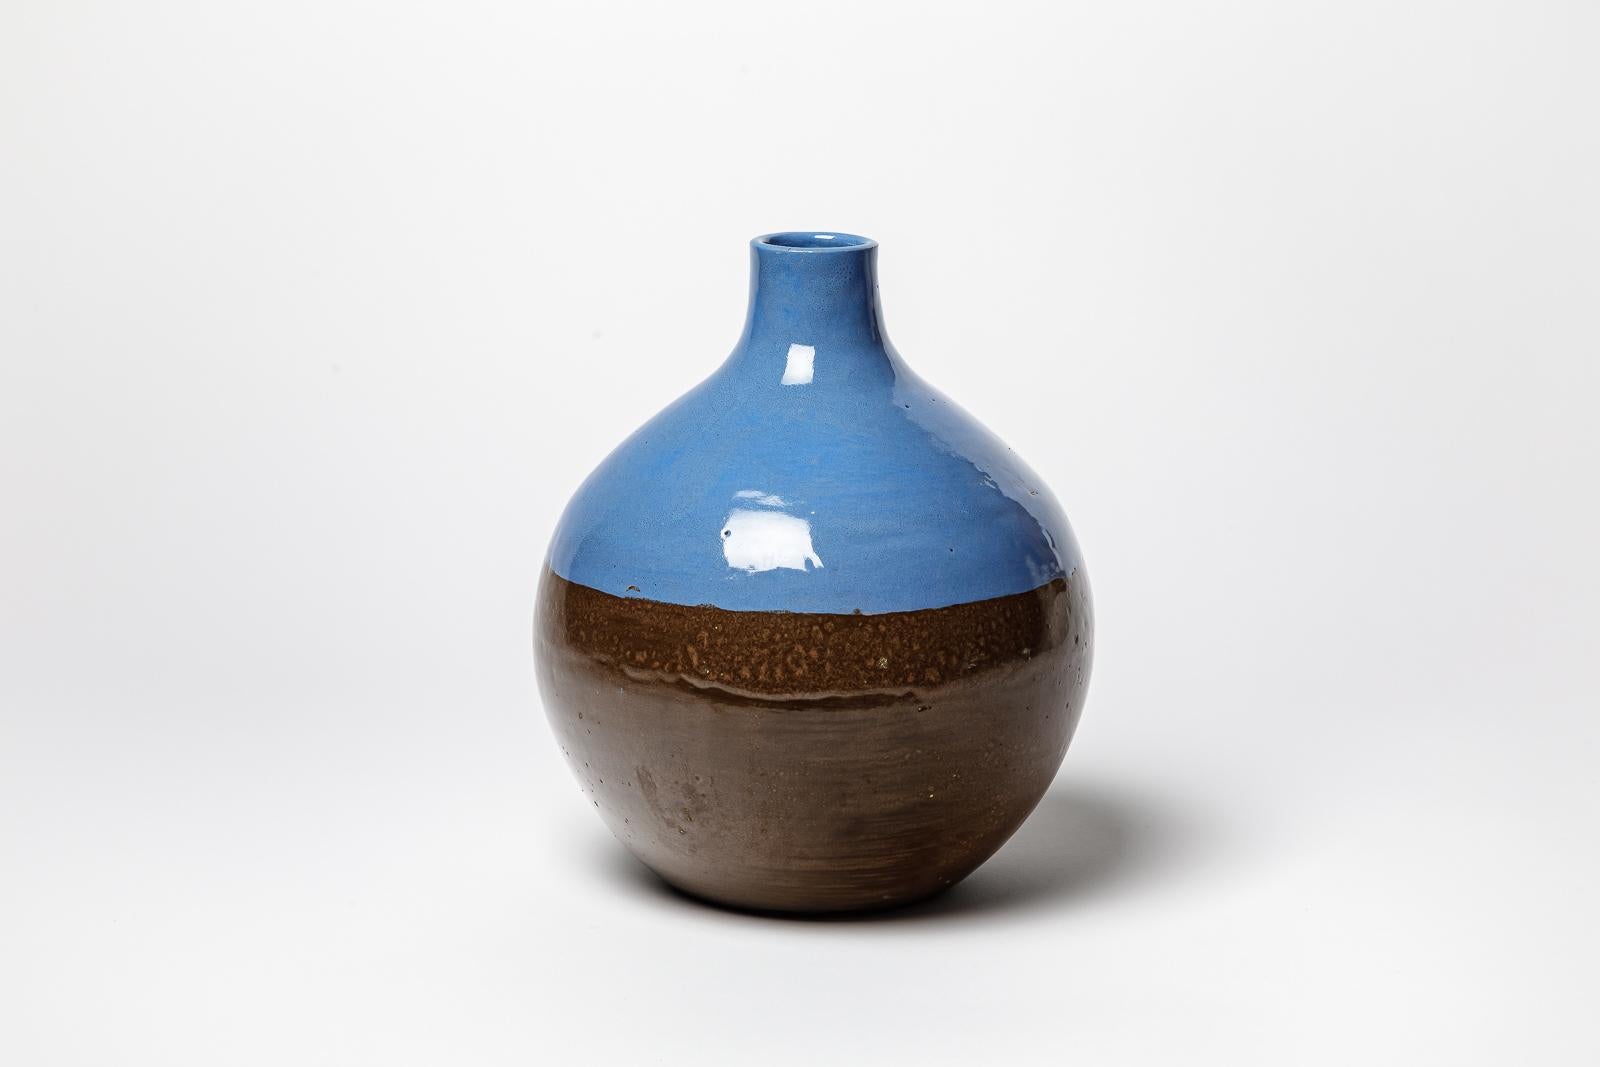 Beaux Arts Blue glazed ceramic vase by CAB (Céramiques d’art de Bordeaux) for la Maitrise. For Sale